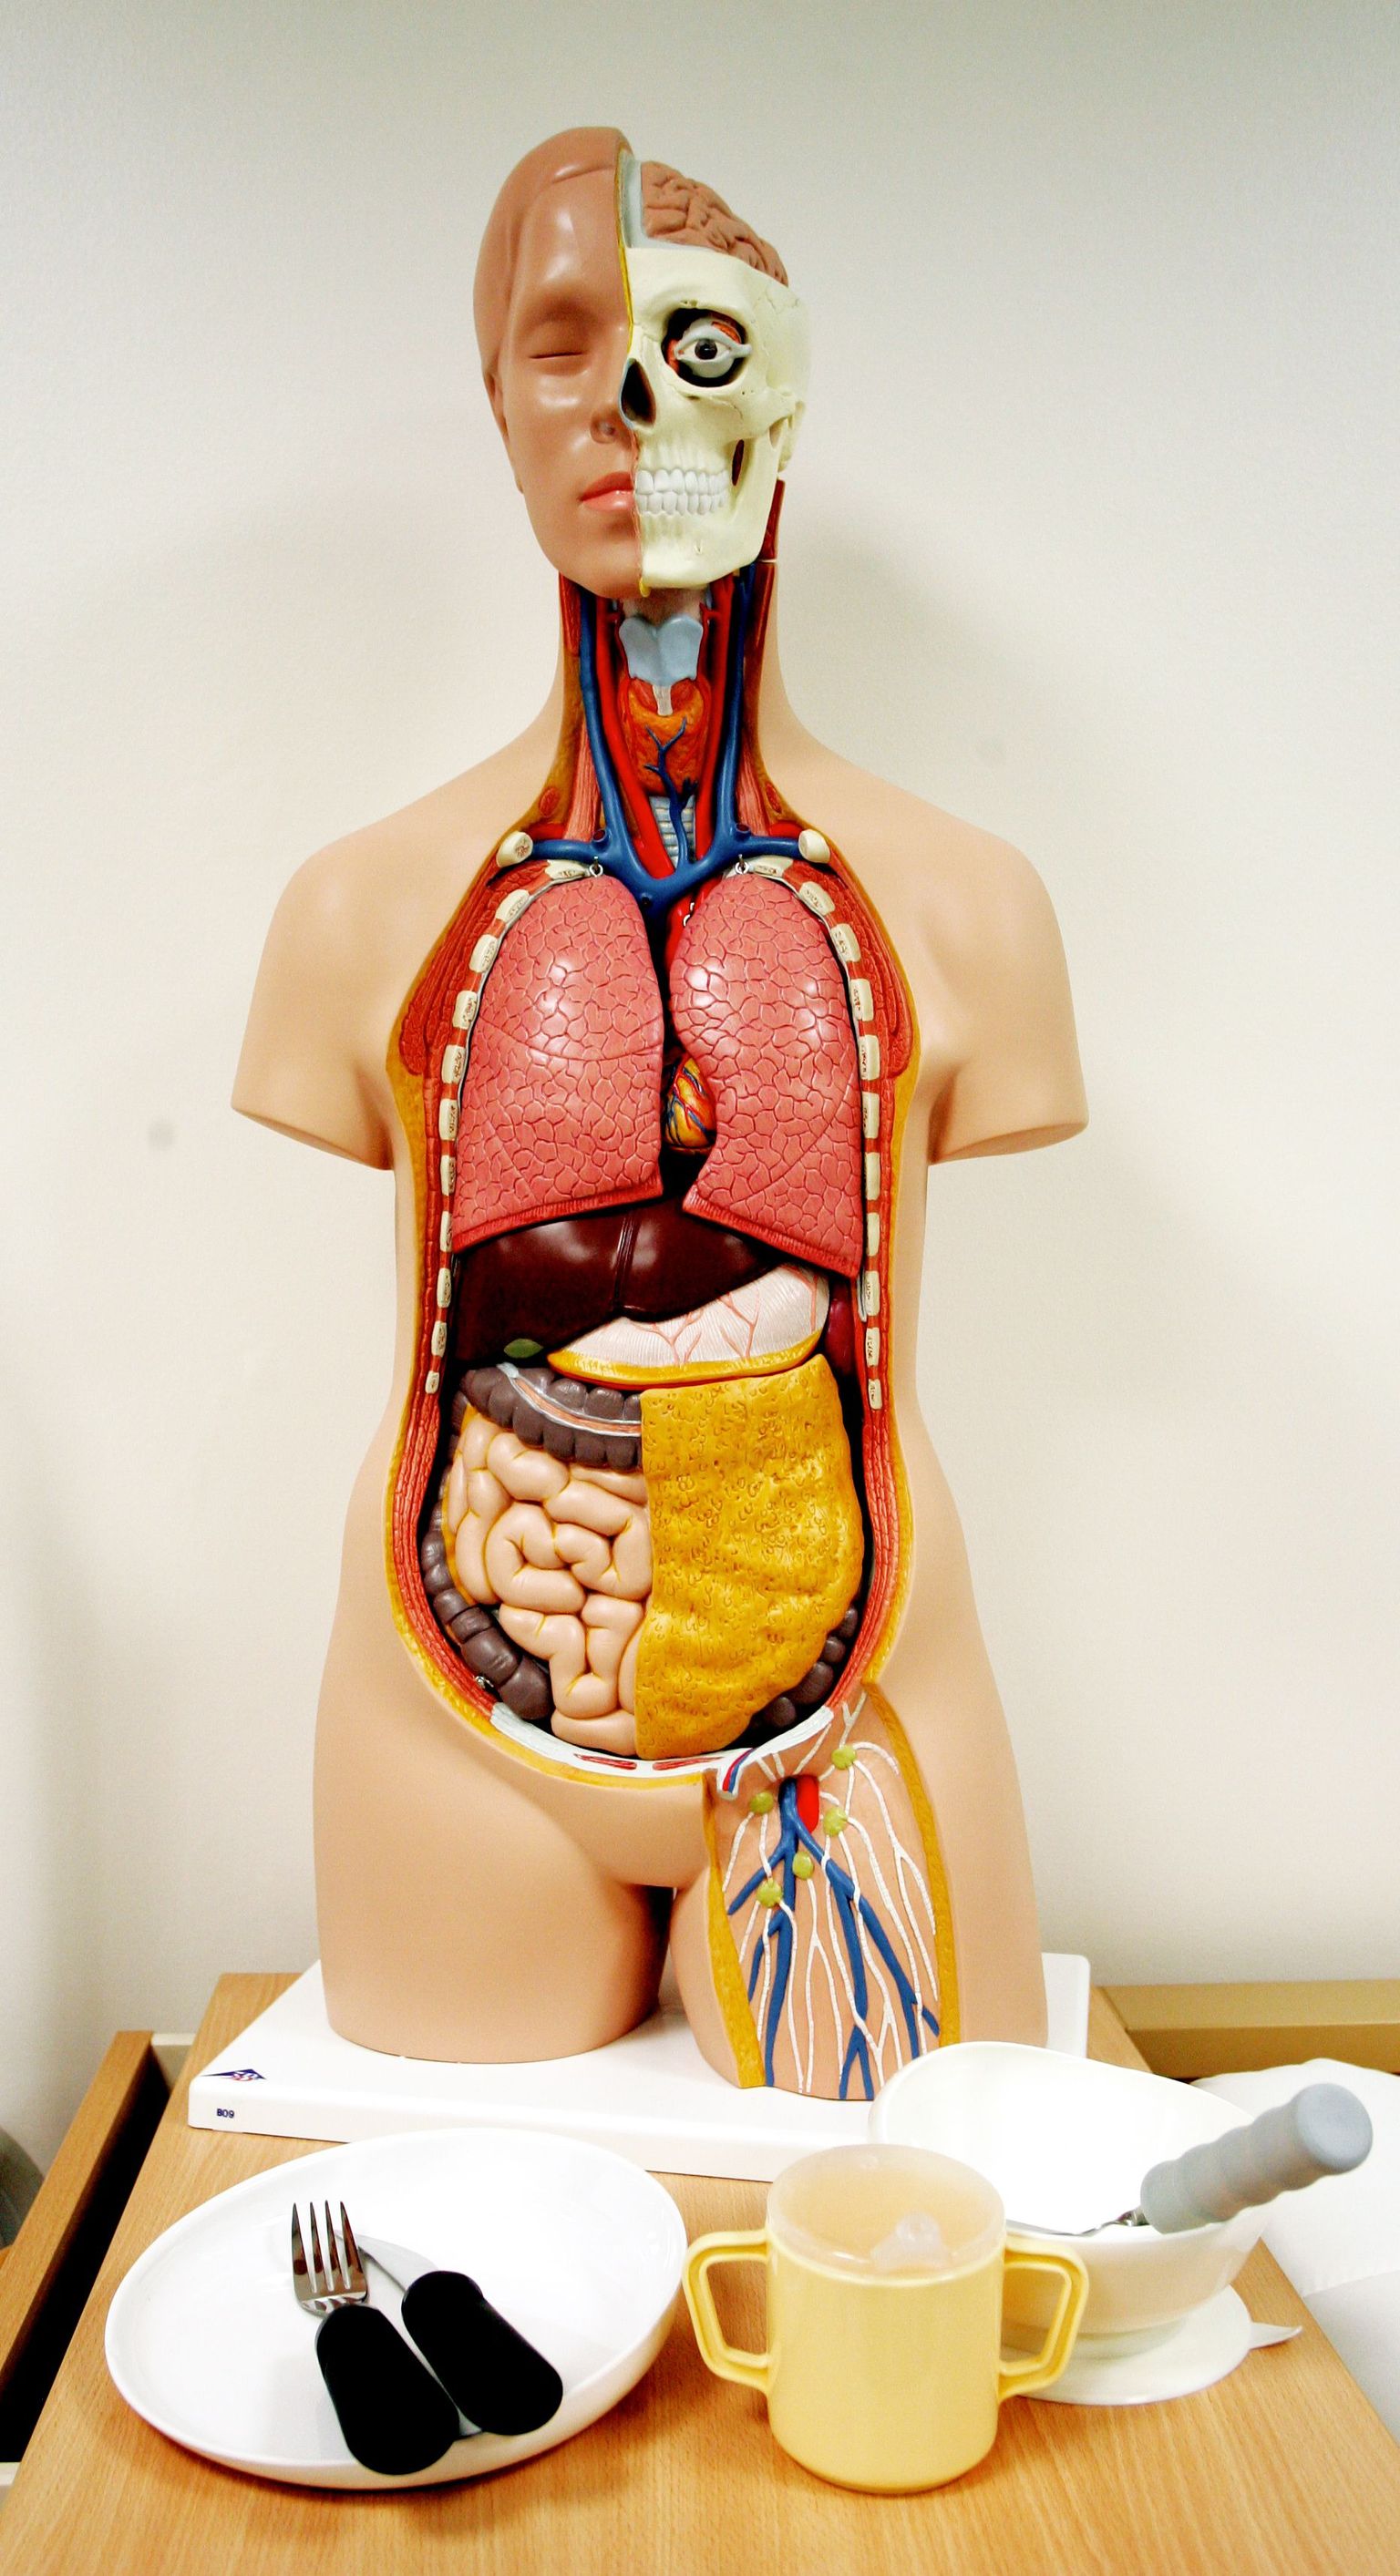 Tulevased tervishoiutöötajad peavad muu hulgas tundma inimeste anatoomiat.